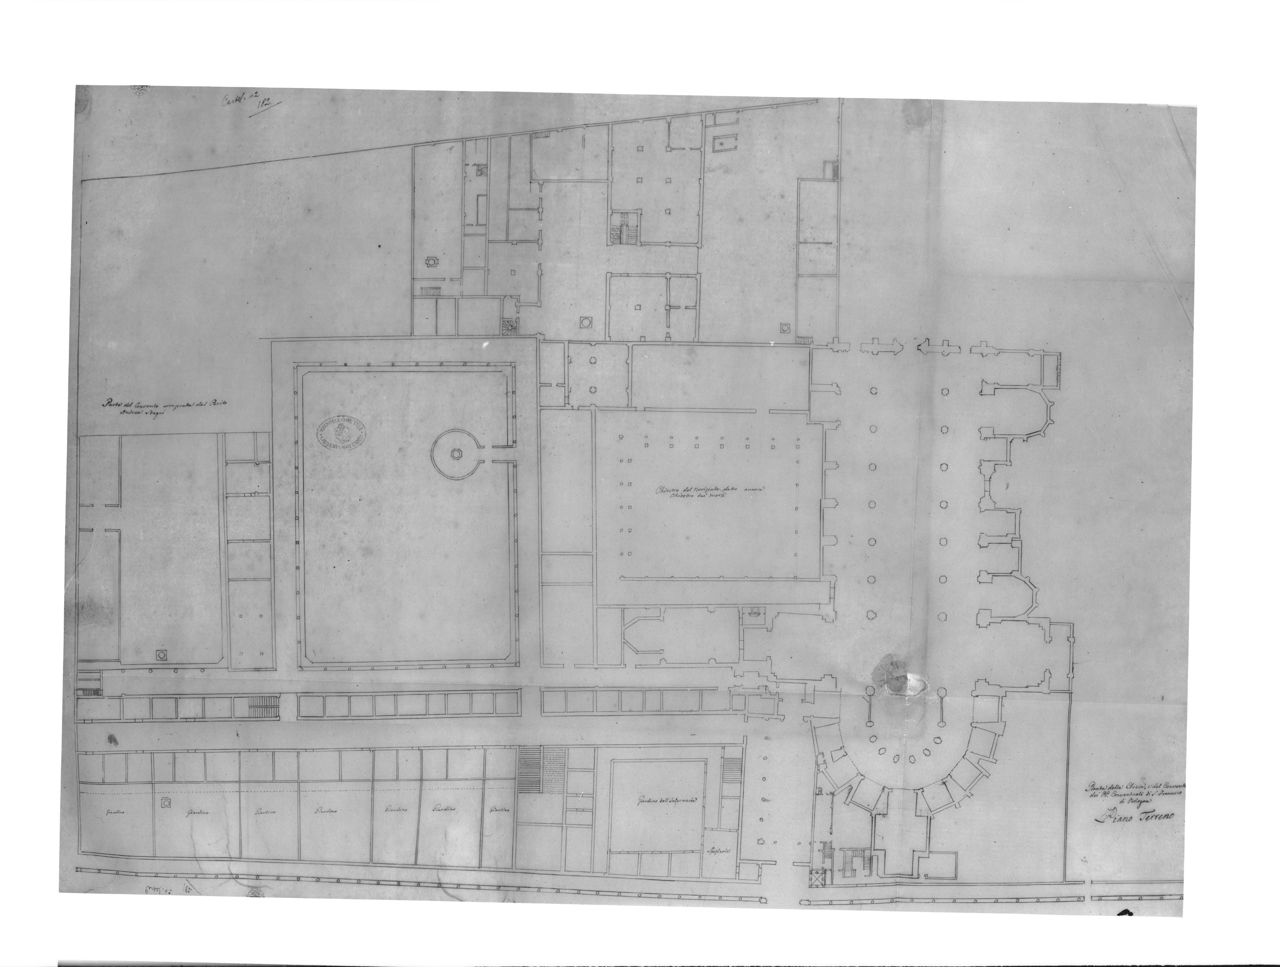 Disegni architettonici - Planimetrie - Chiese - Conventi (negativo) di Zagnoli, Alfonso (XX)